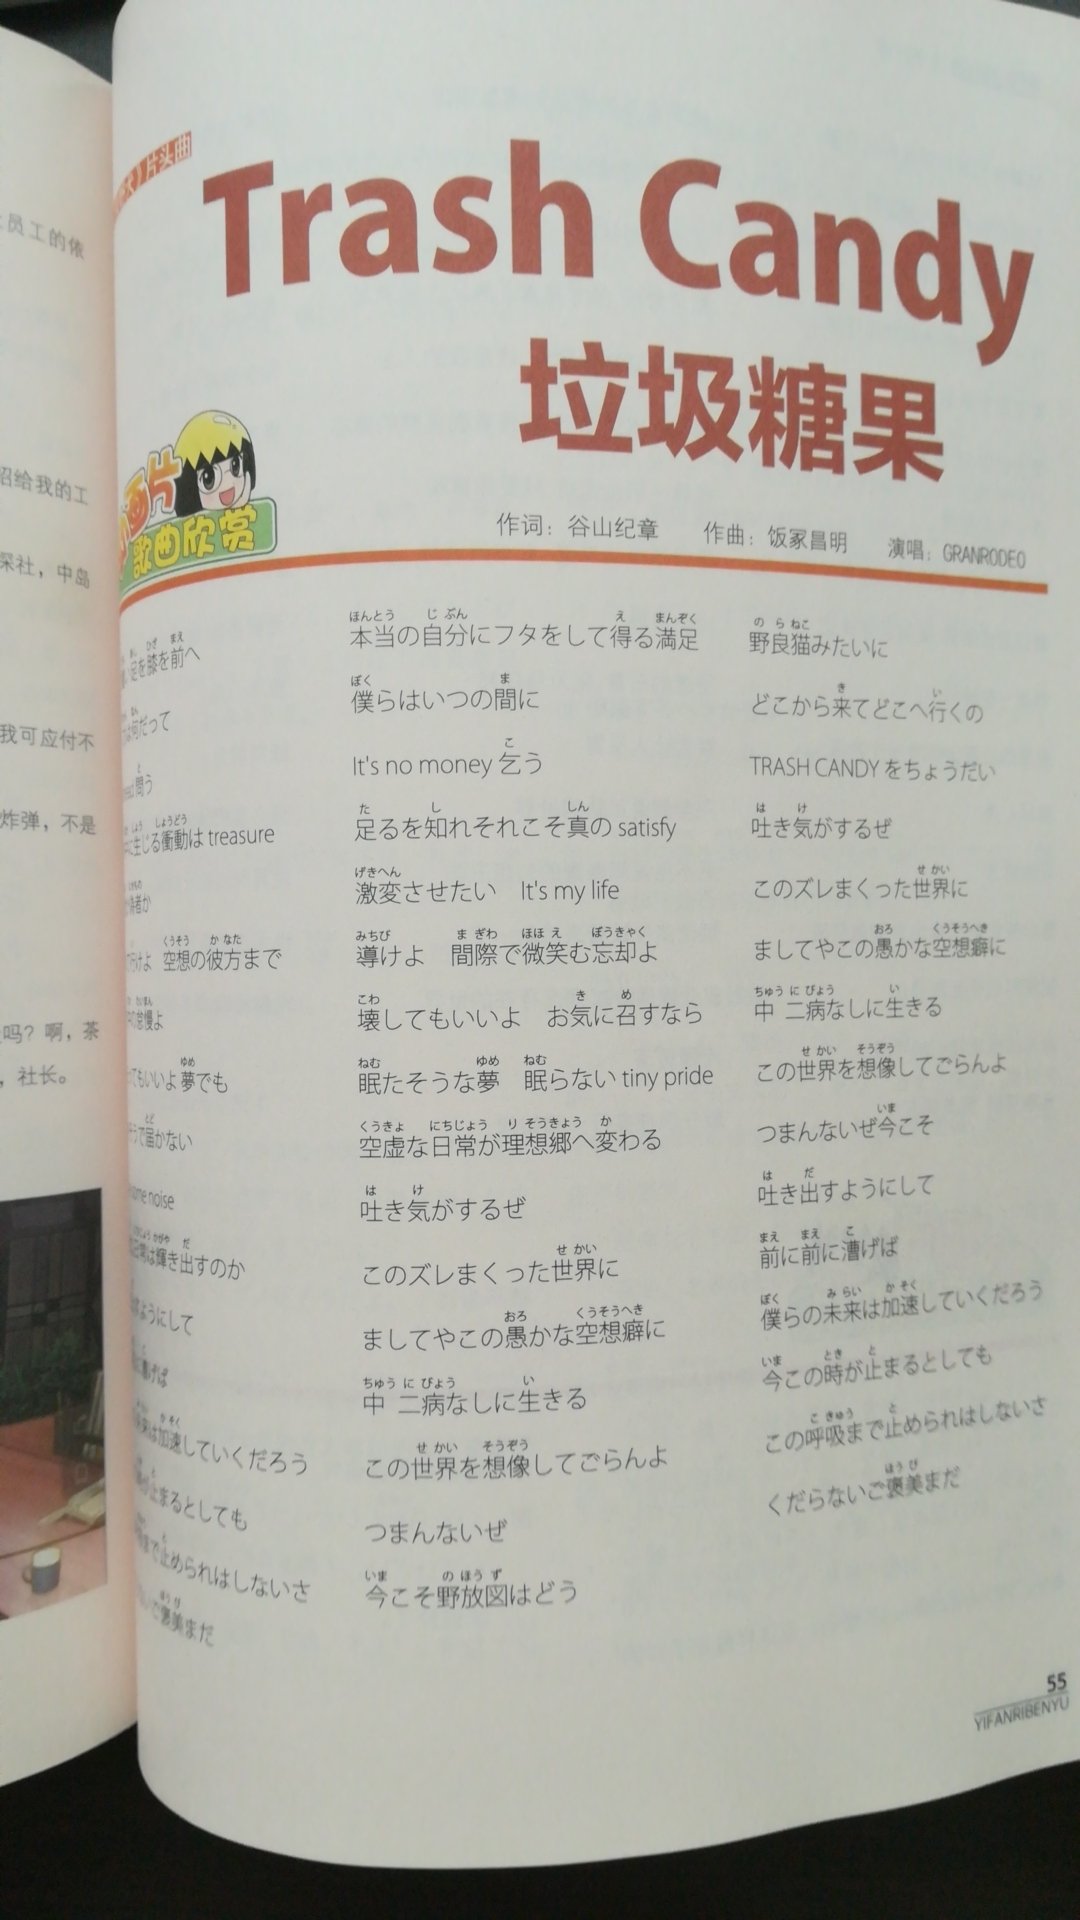 这本杂志真心不错，对于了解日本文化，学习日语都挺有帮助的。